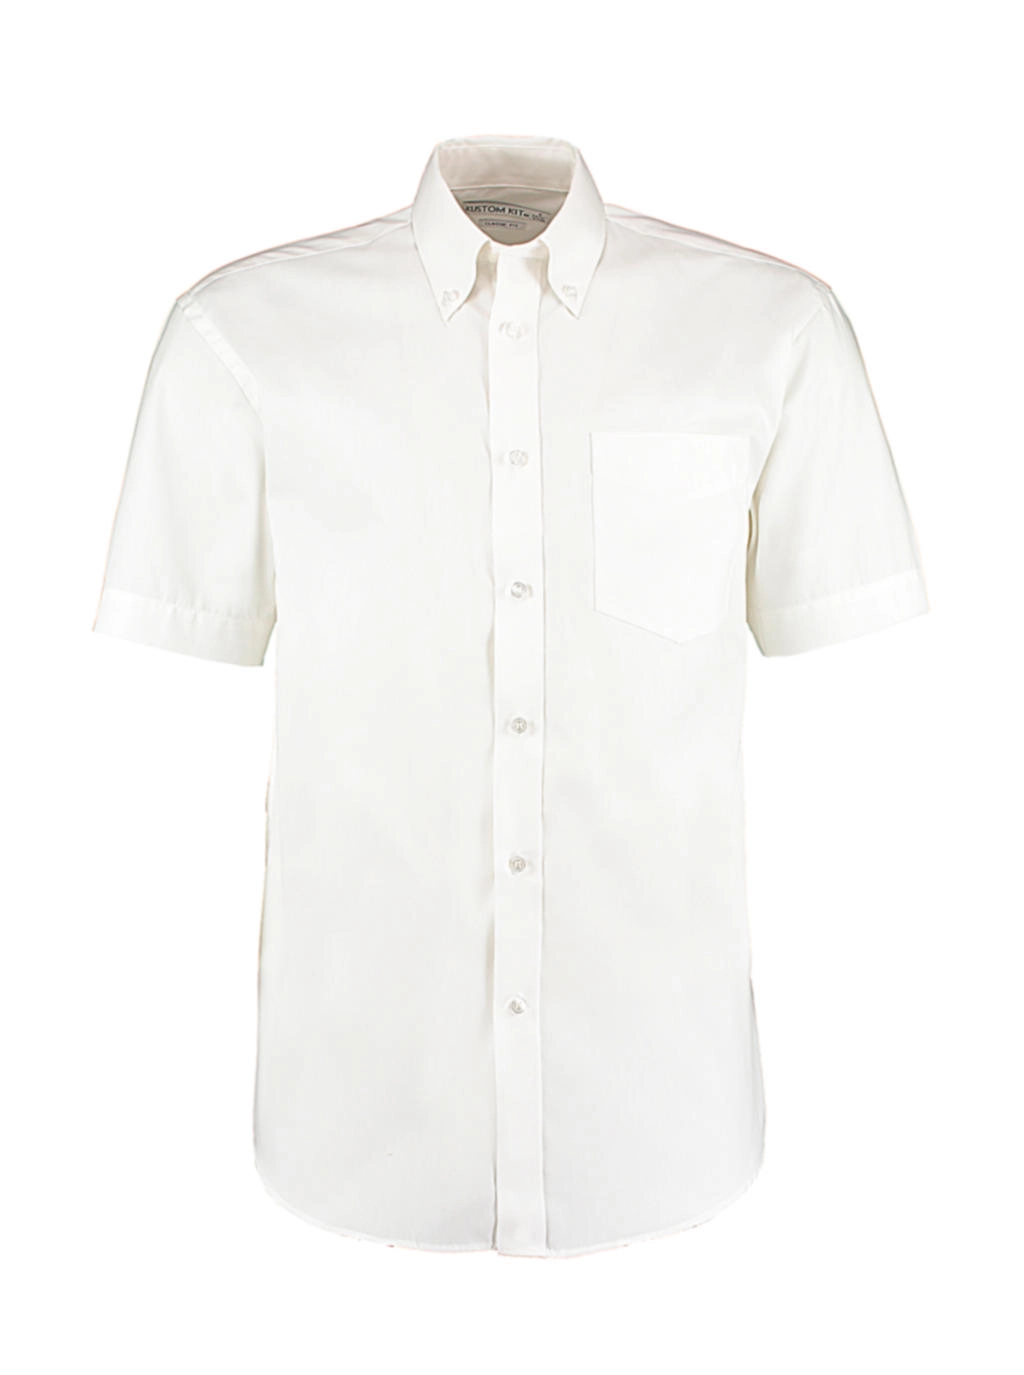 Classic Fit Premium Oxford Shirt SSL zum Besticken und Bedrucken in der Farbe White mit Ihren Logo, Schriftzug oder Motiv.